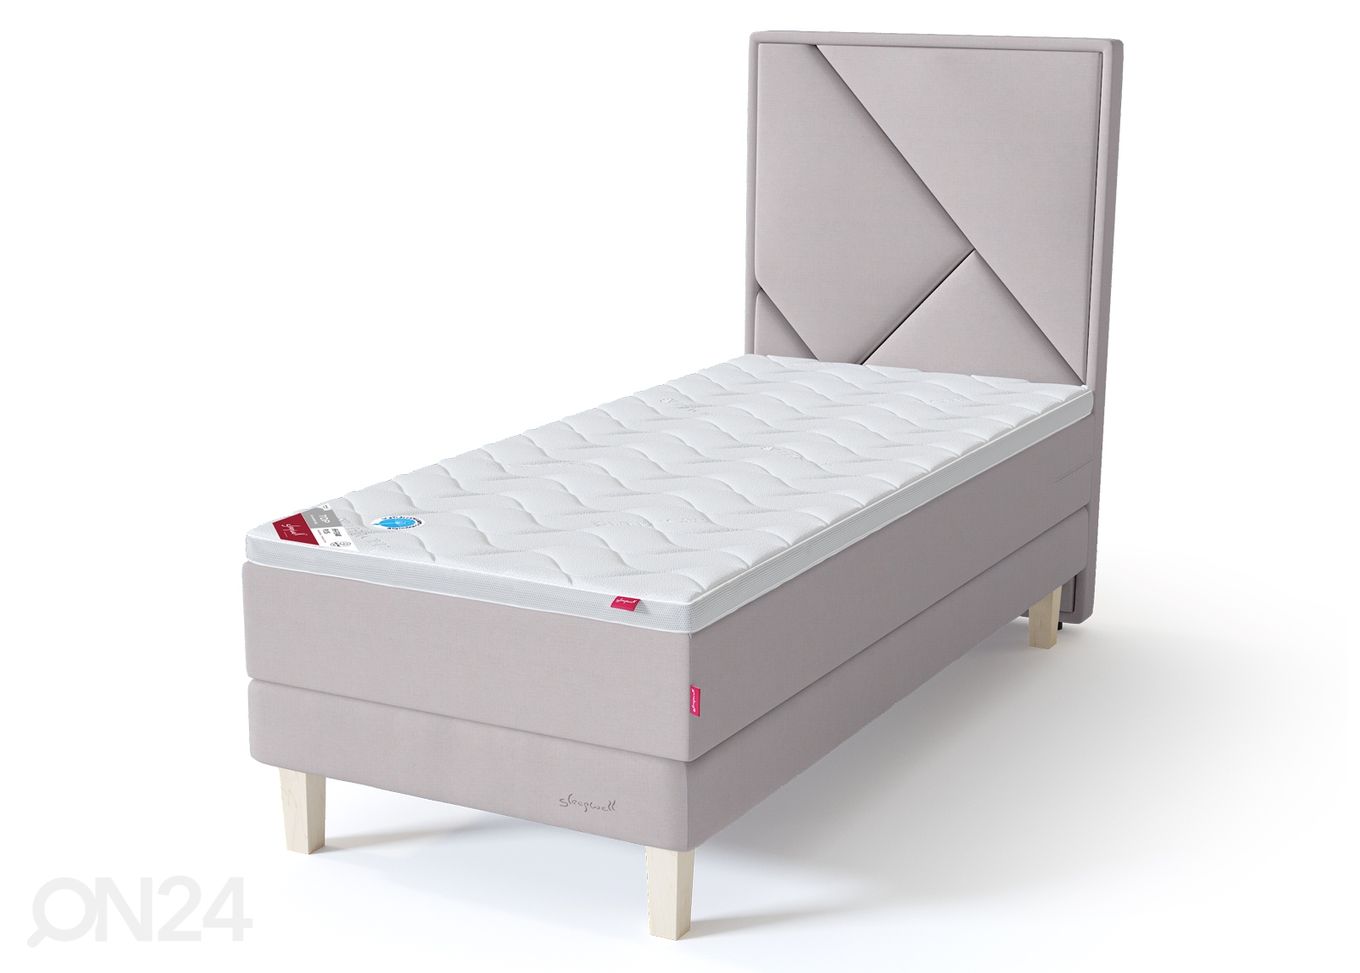 Sleepwell Red континентальная кровать на раме 90x200 cm мягкая увеличить